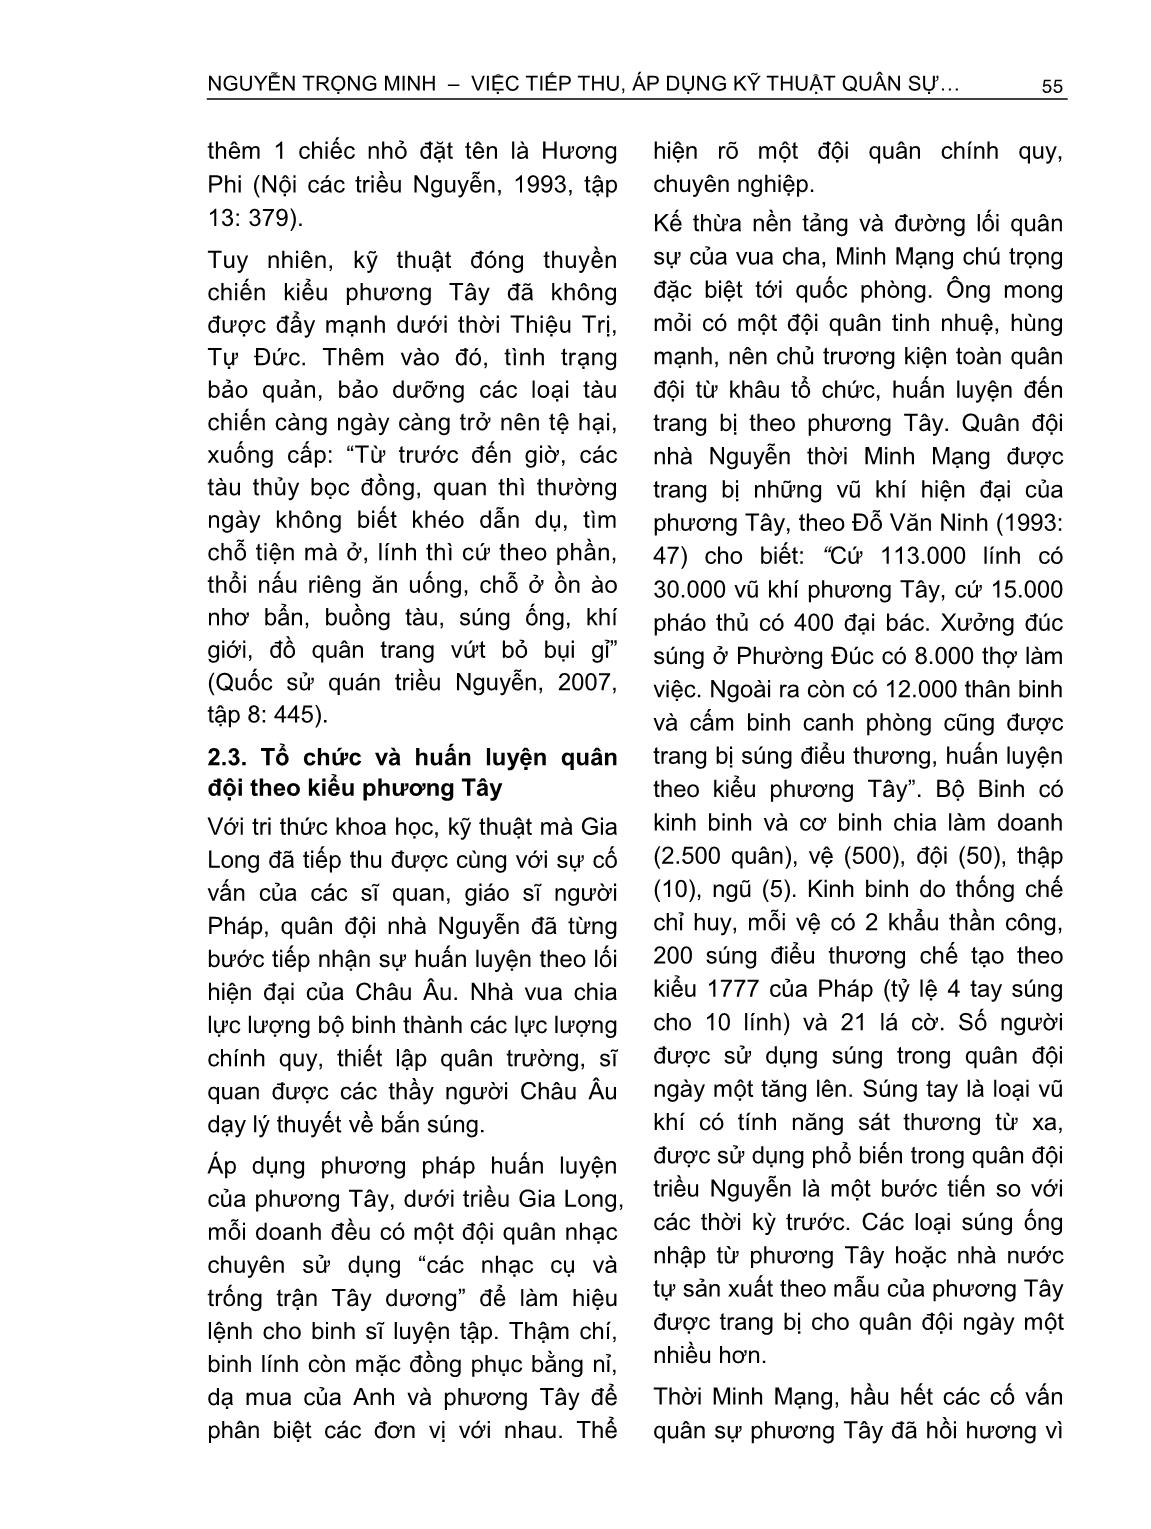 Việc tiếp thu, áp dụng kỹ thuật quân sự phương Tây của triều Nguyễn (1802-1858) trang 6